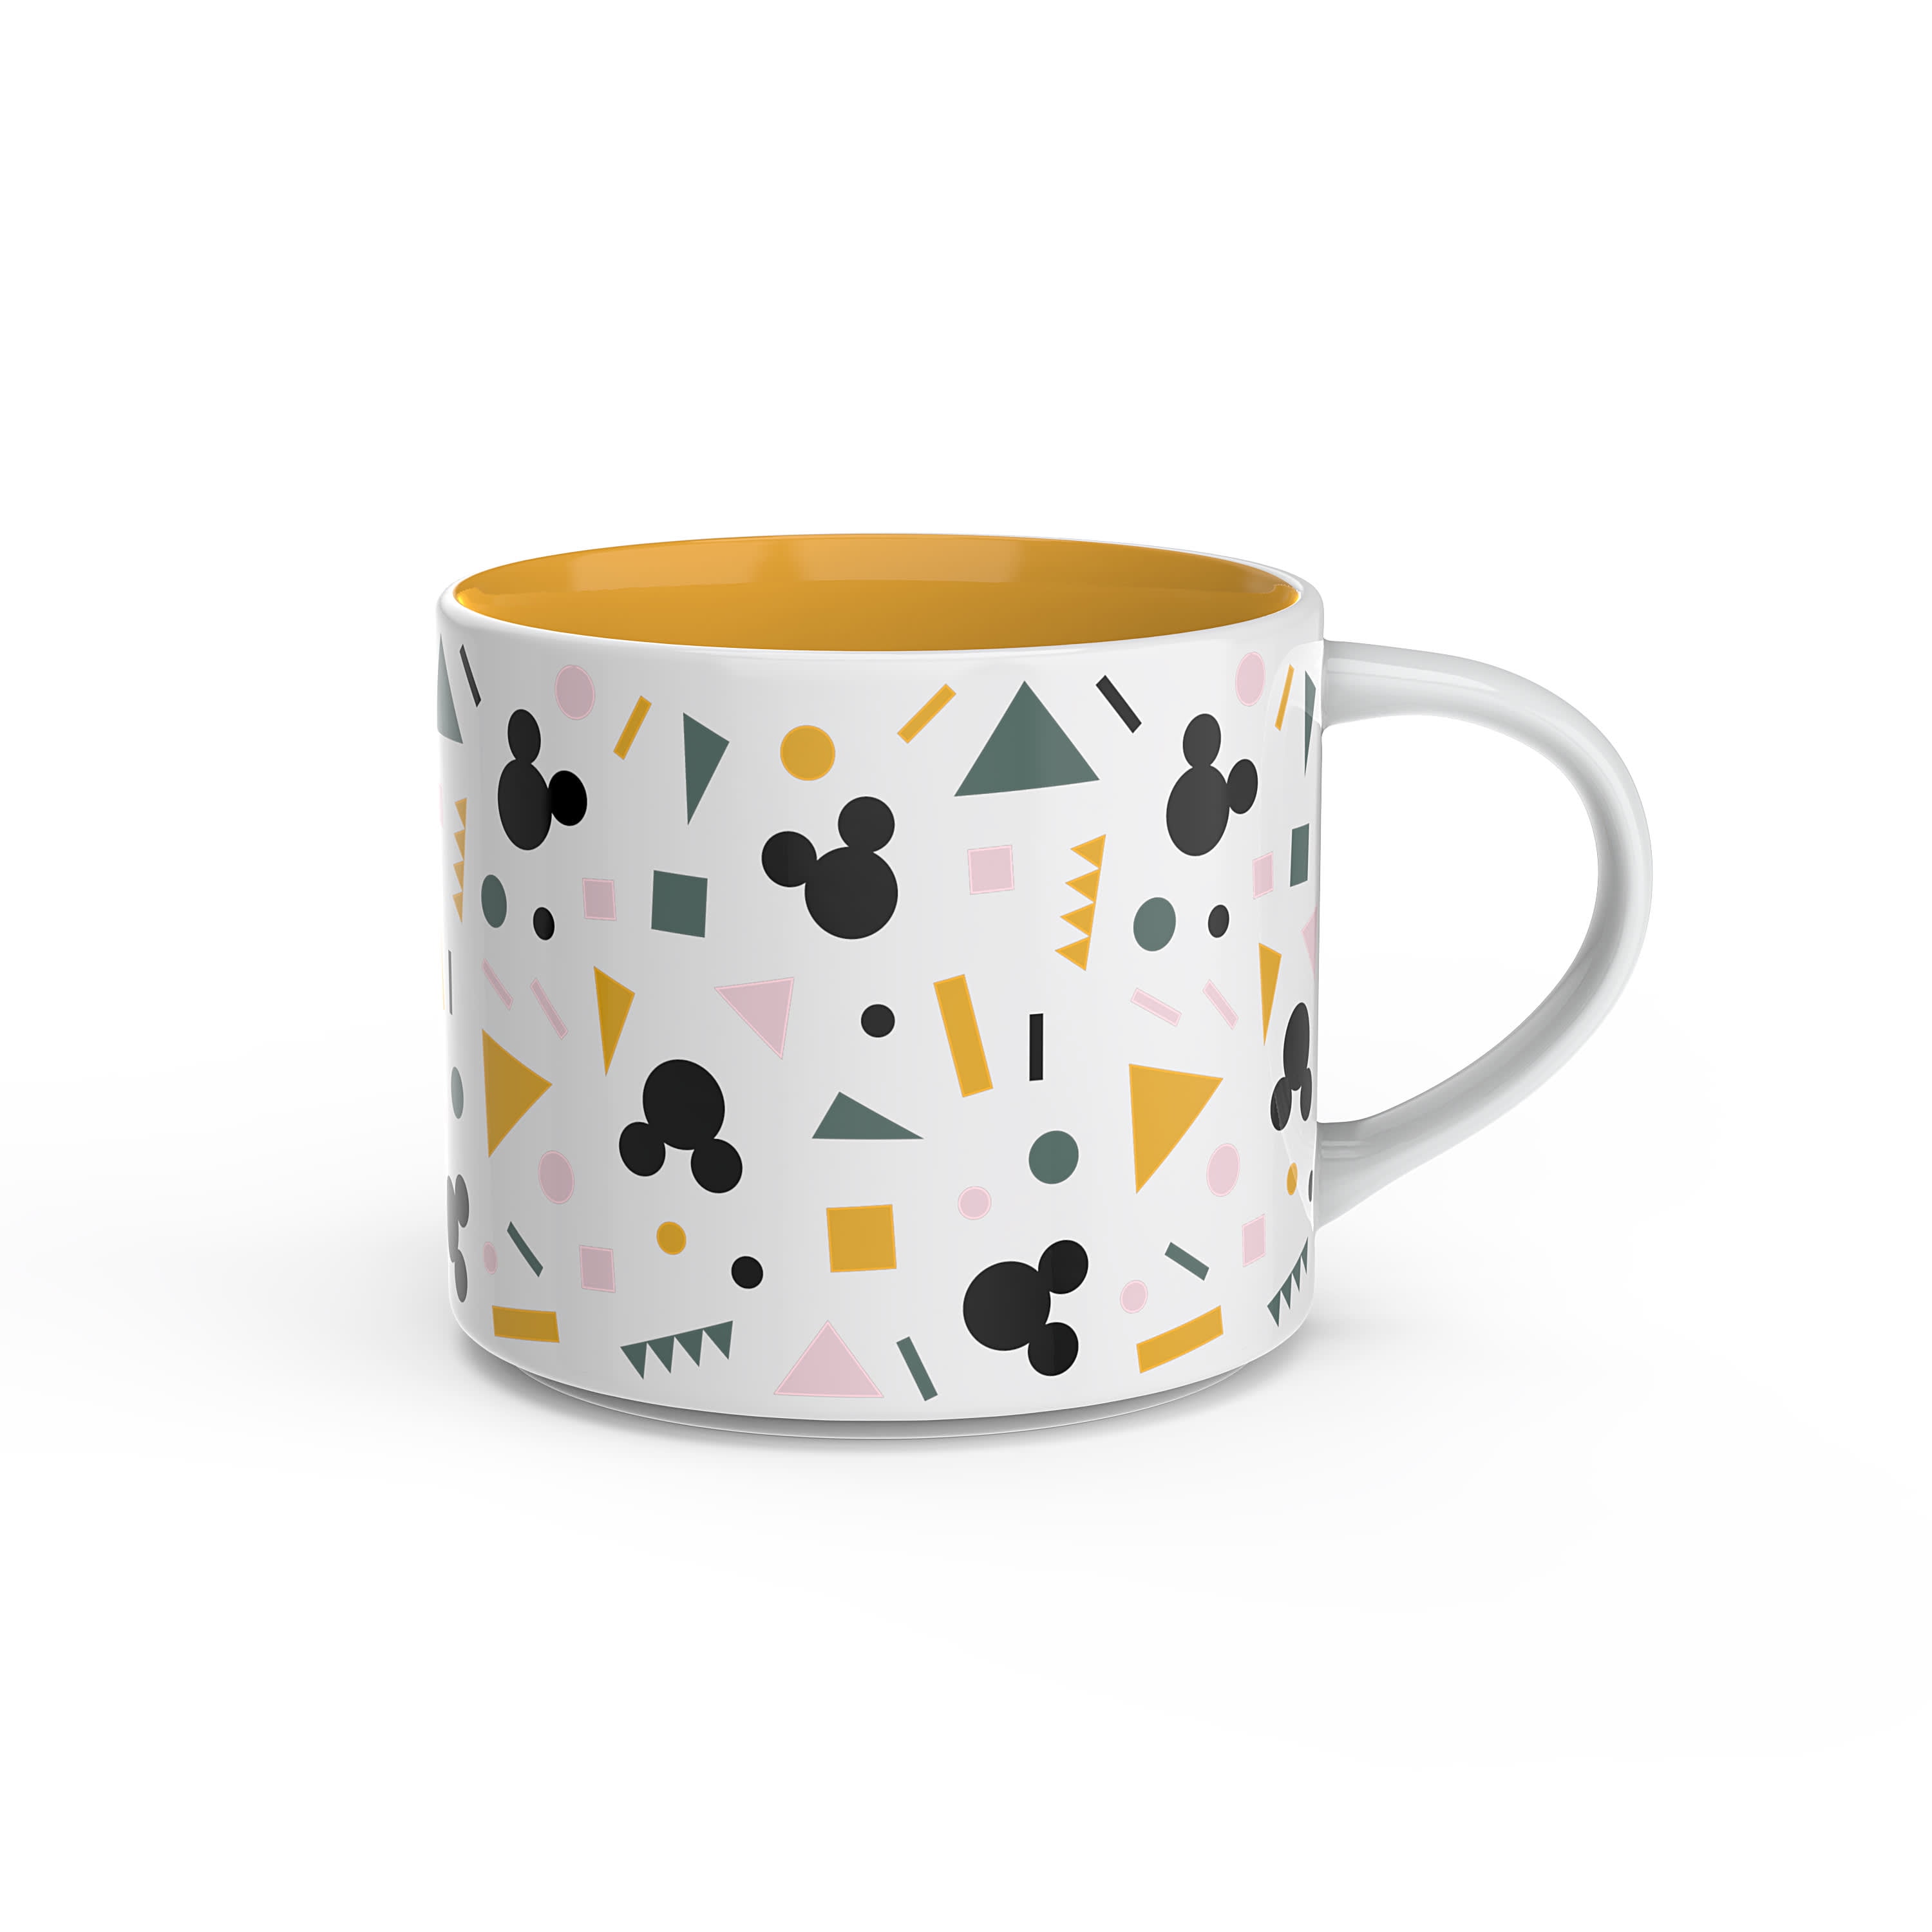 Zak Designs 15 Oz Ceramic Modern Mug, 4-Piece Set (Assorted Colors